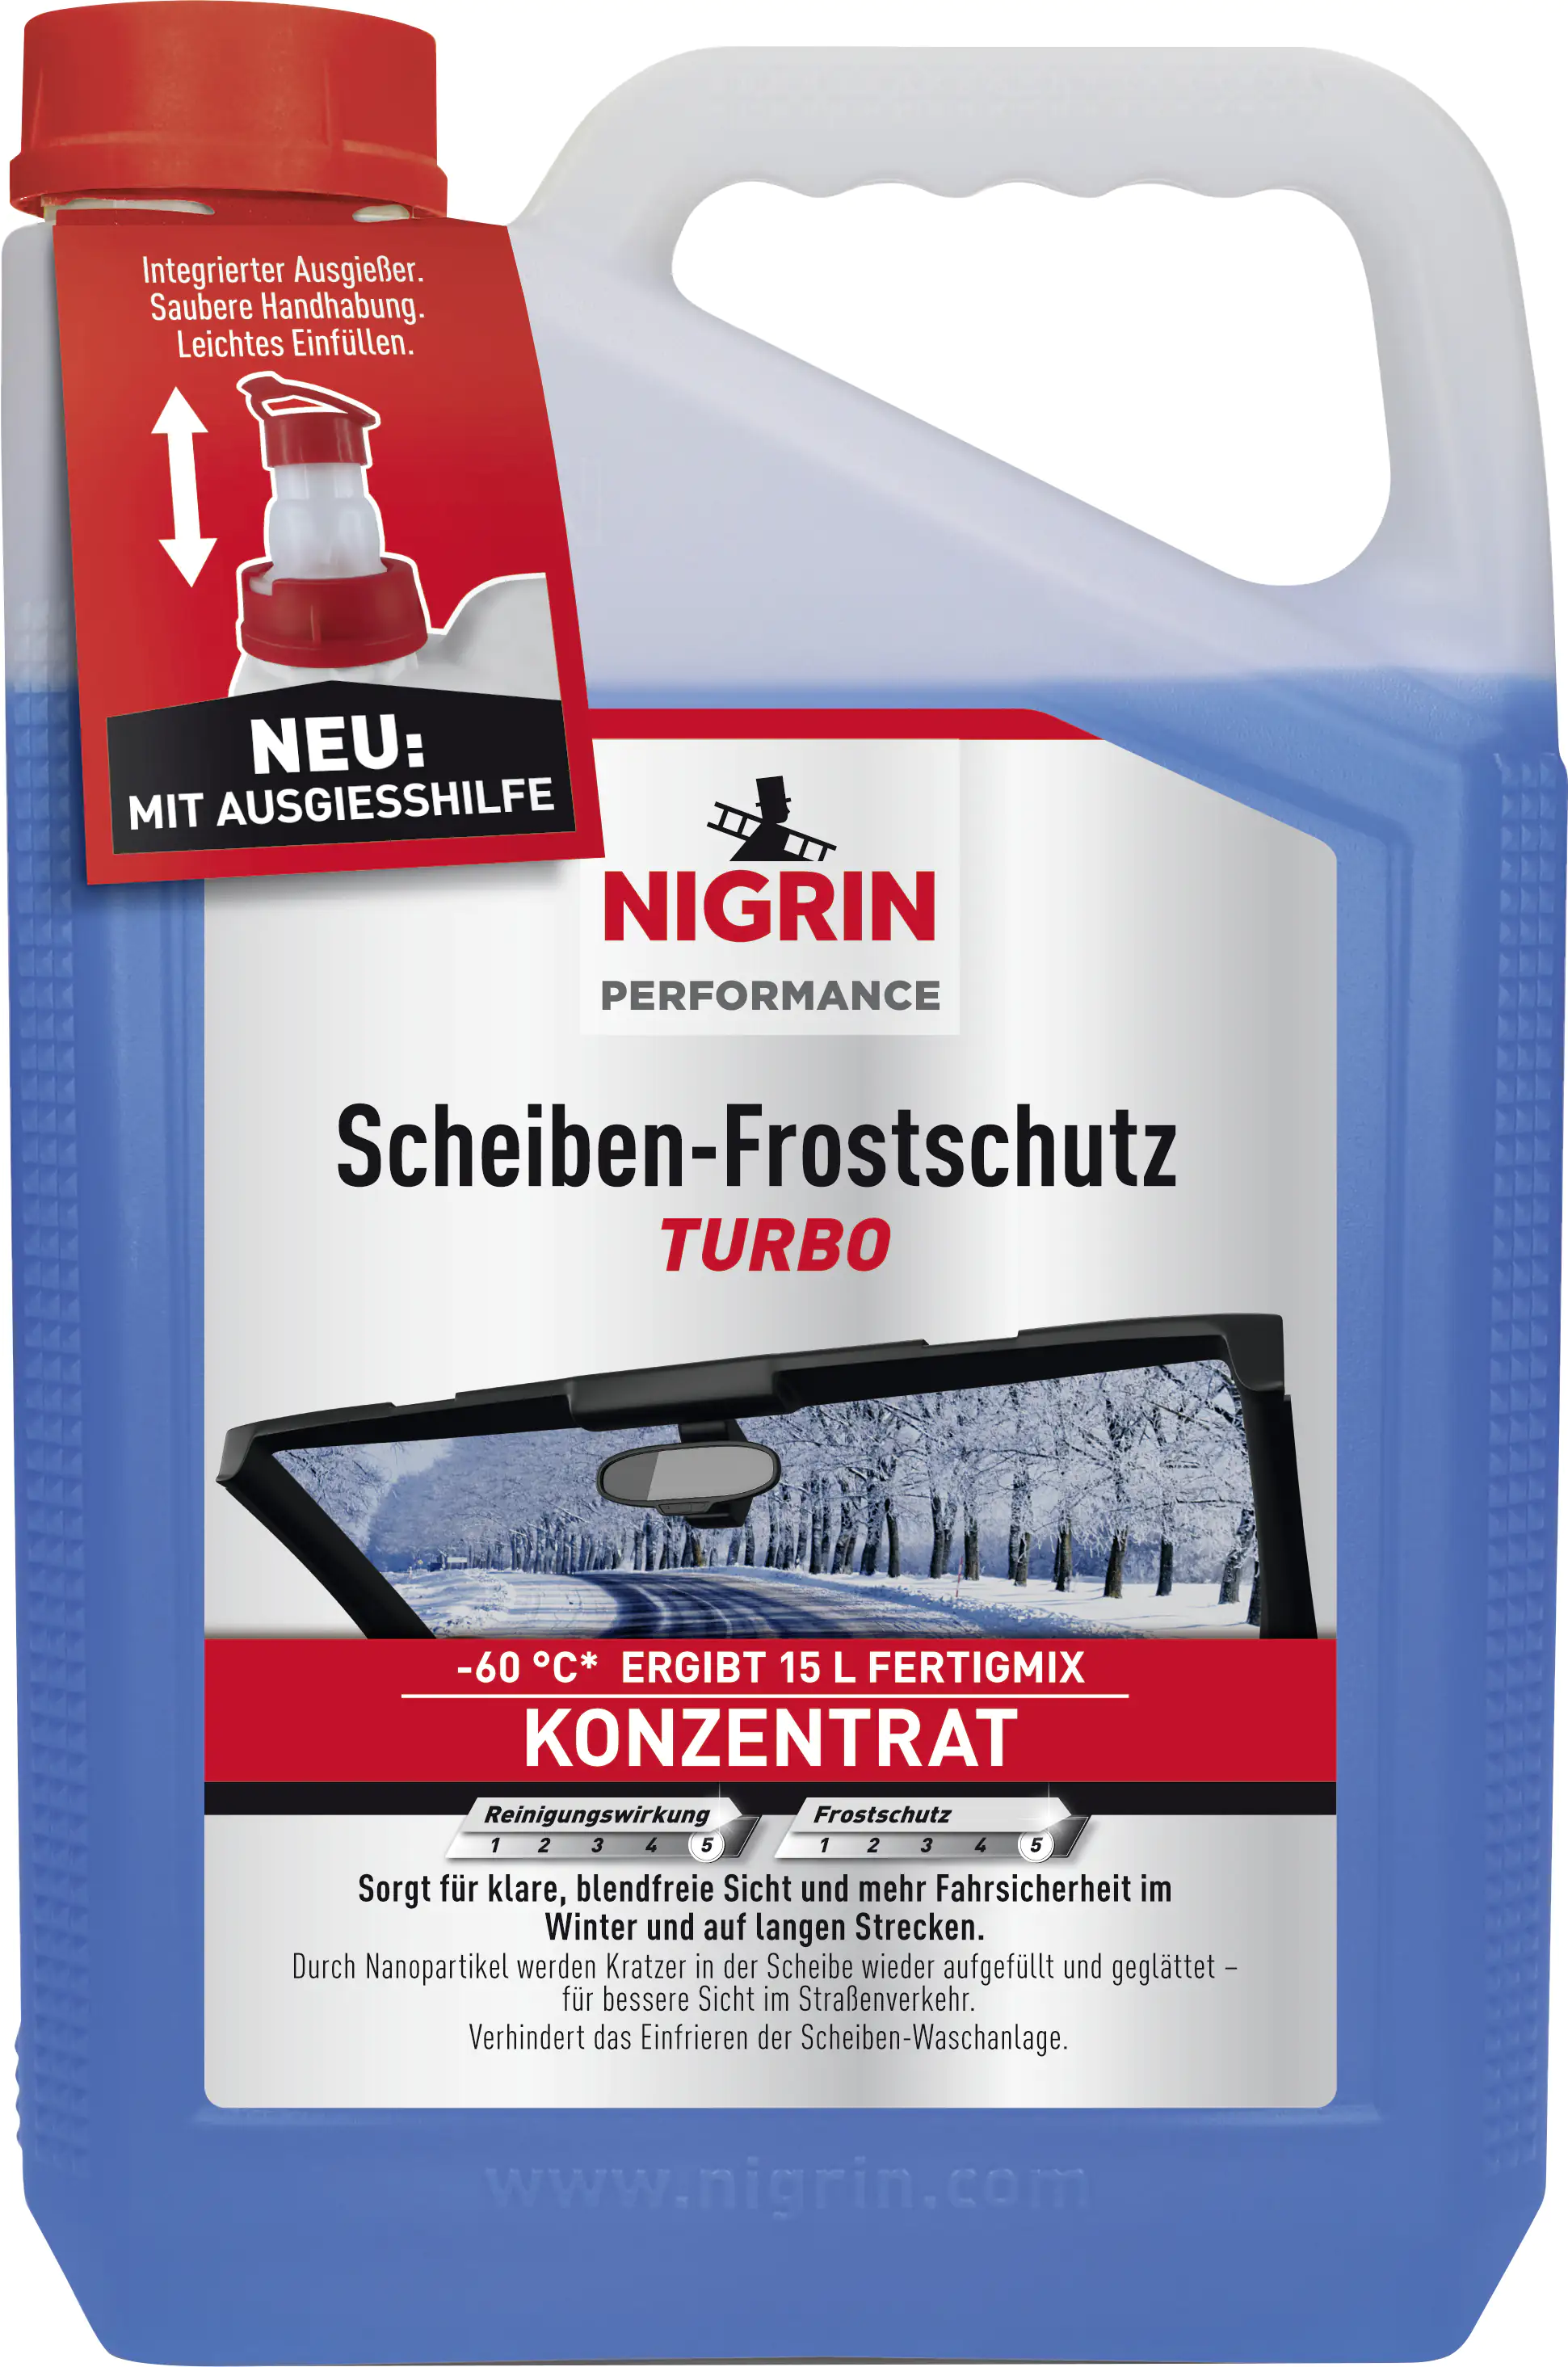 NIGRIN KFZ-Scheiben-Frostschutz POWER, Fertigmix, 1 l